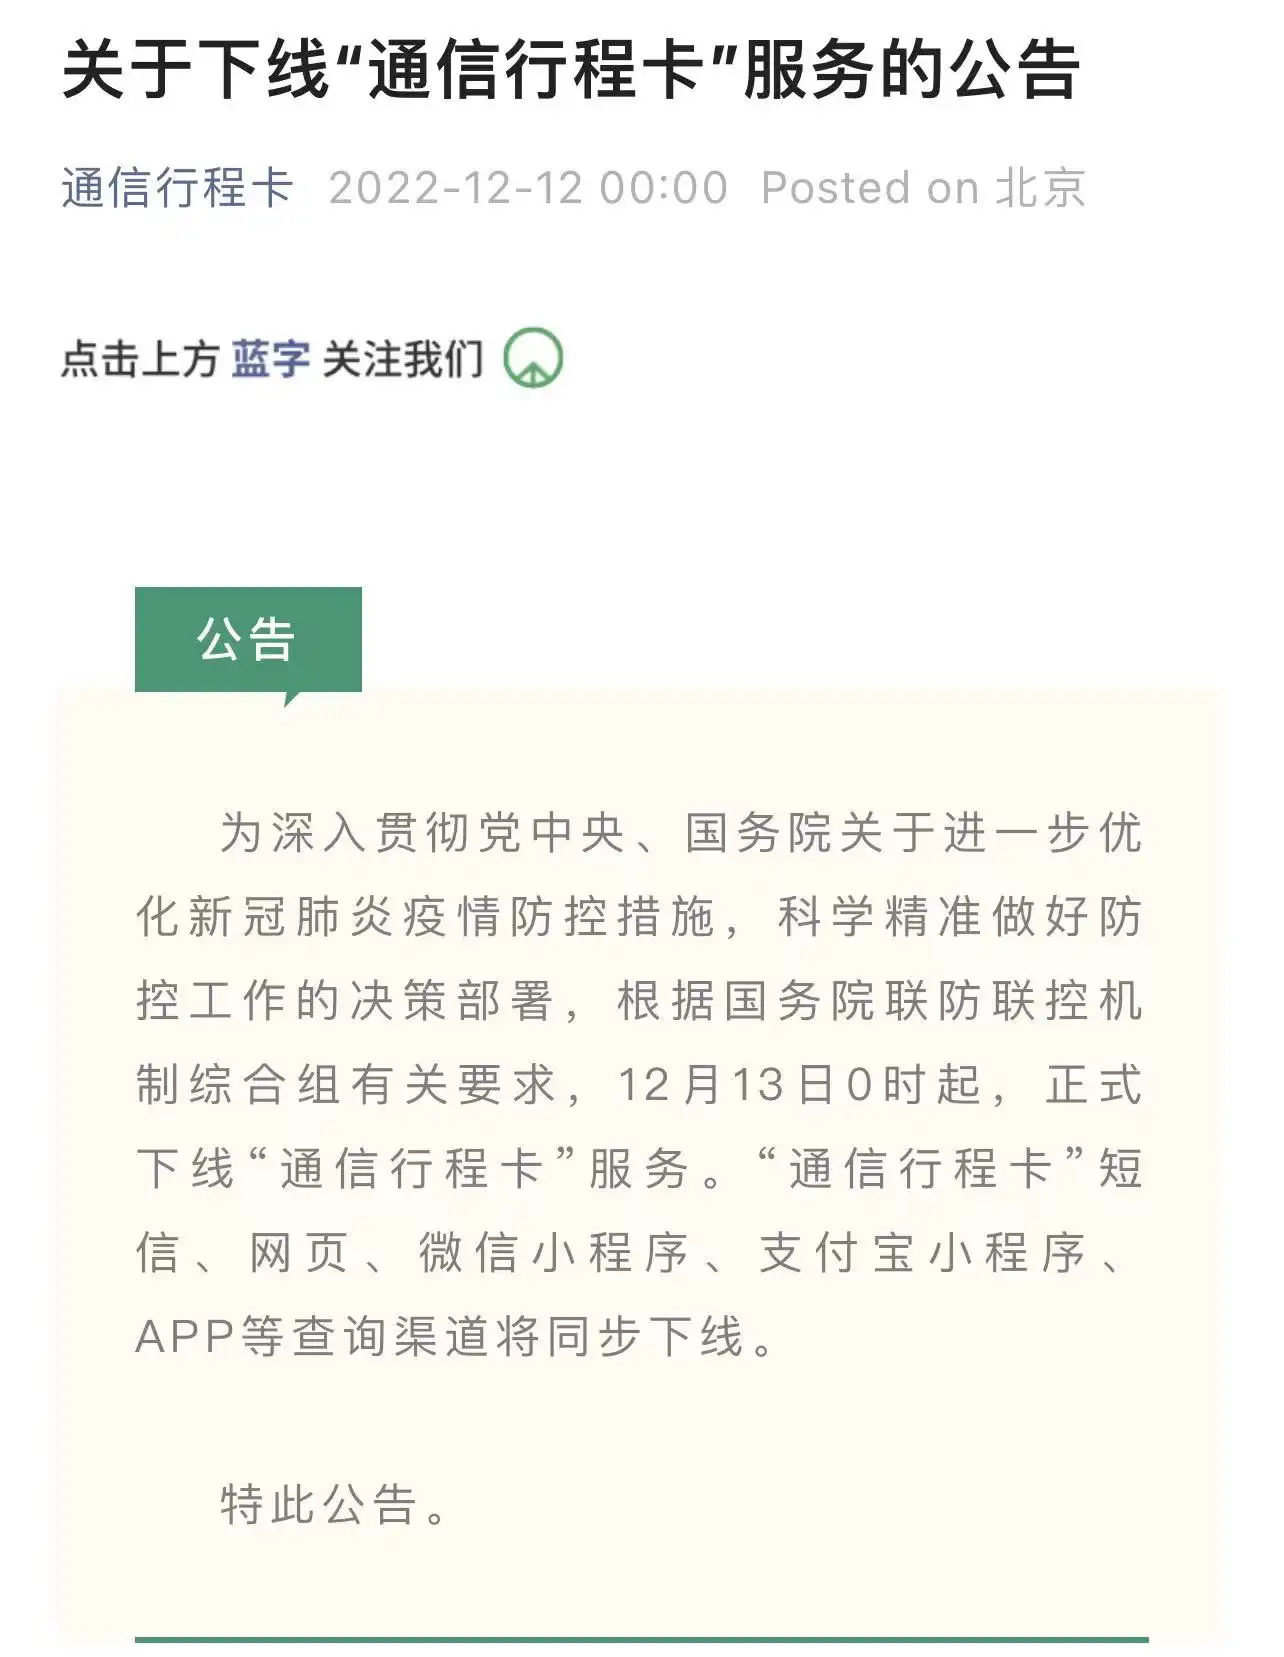 จีนประกาศยุติใช้งาน รหัสเดินทางดิจิตอล ตั้งแต่ 13 ธันวาคม 2022 เป็นต้นไป HealthServ